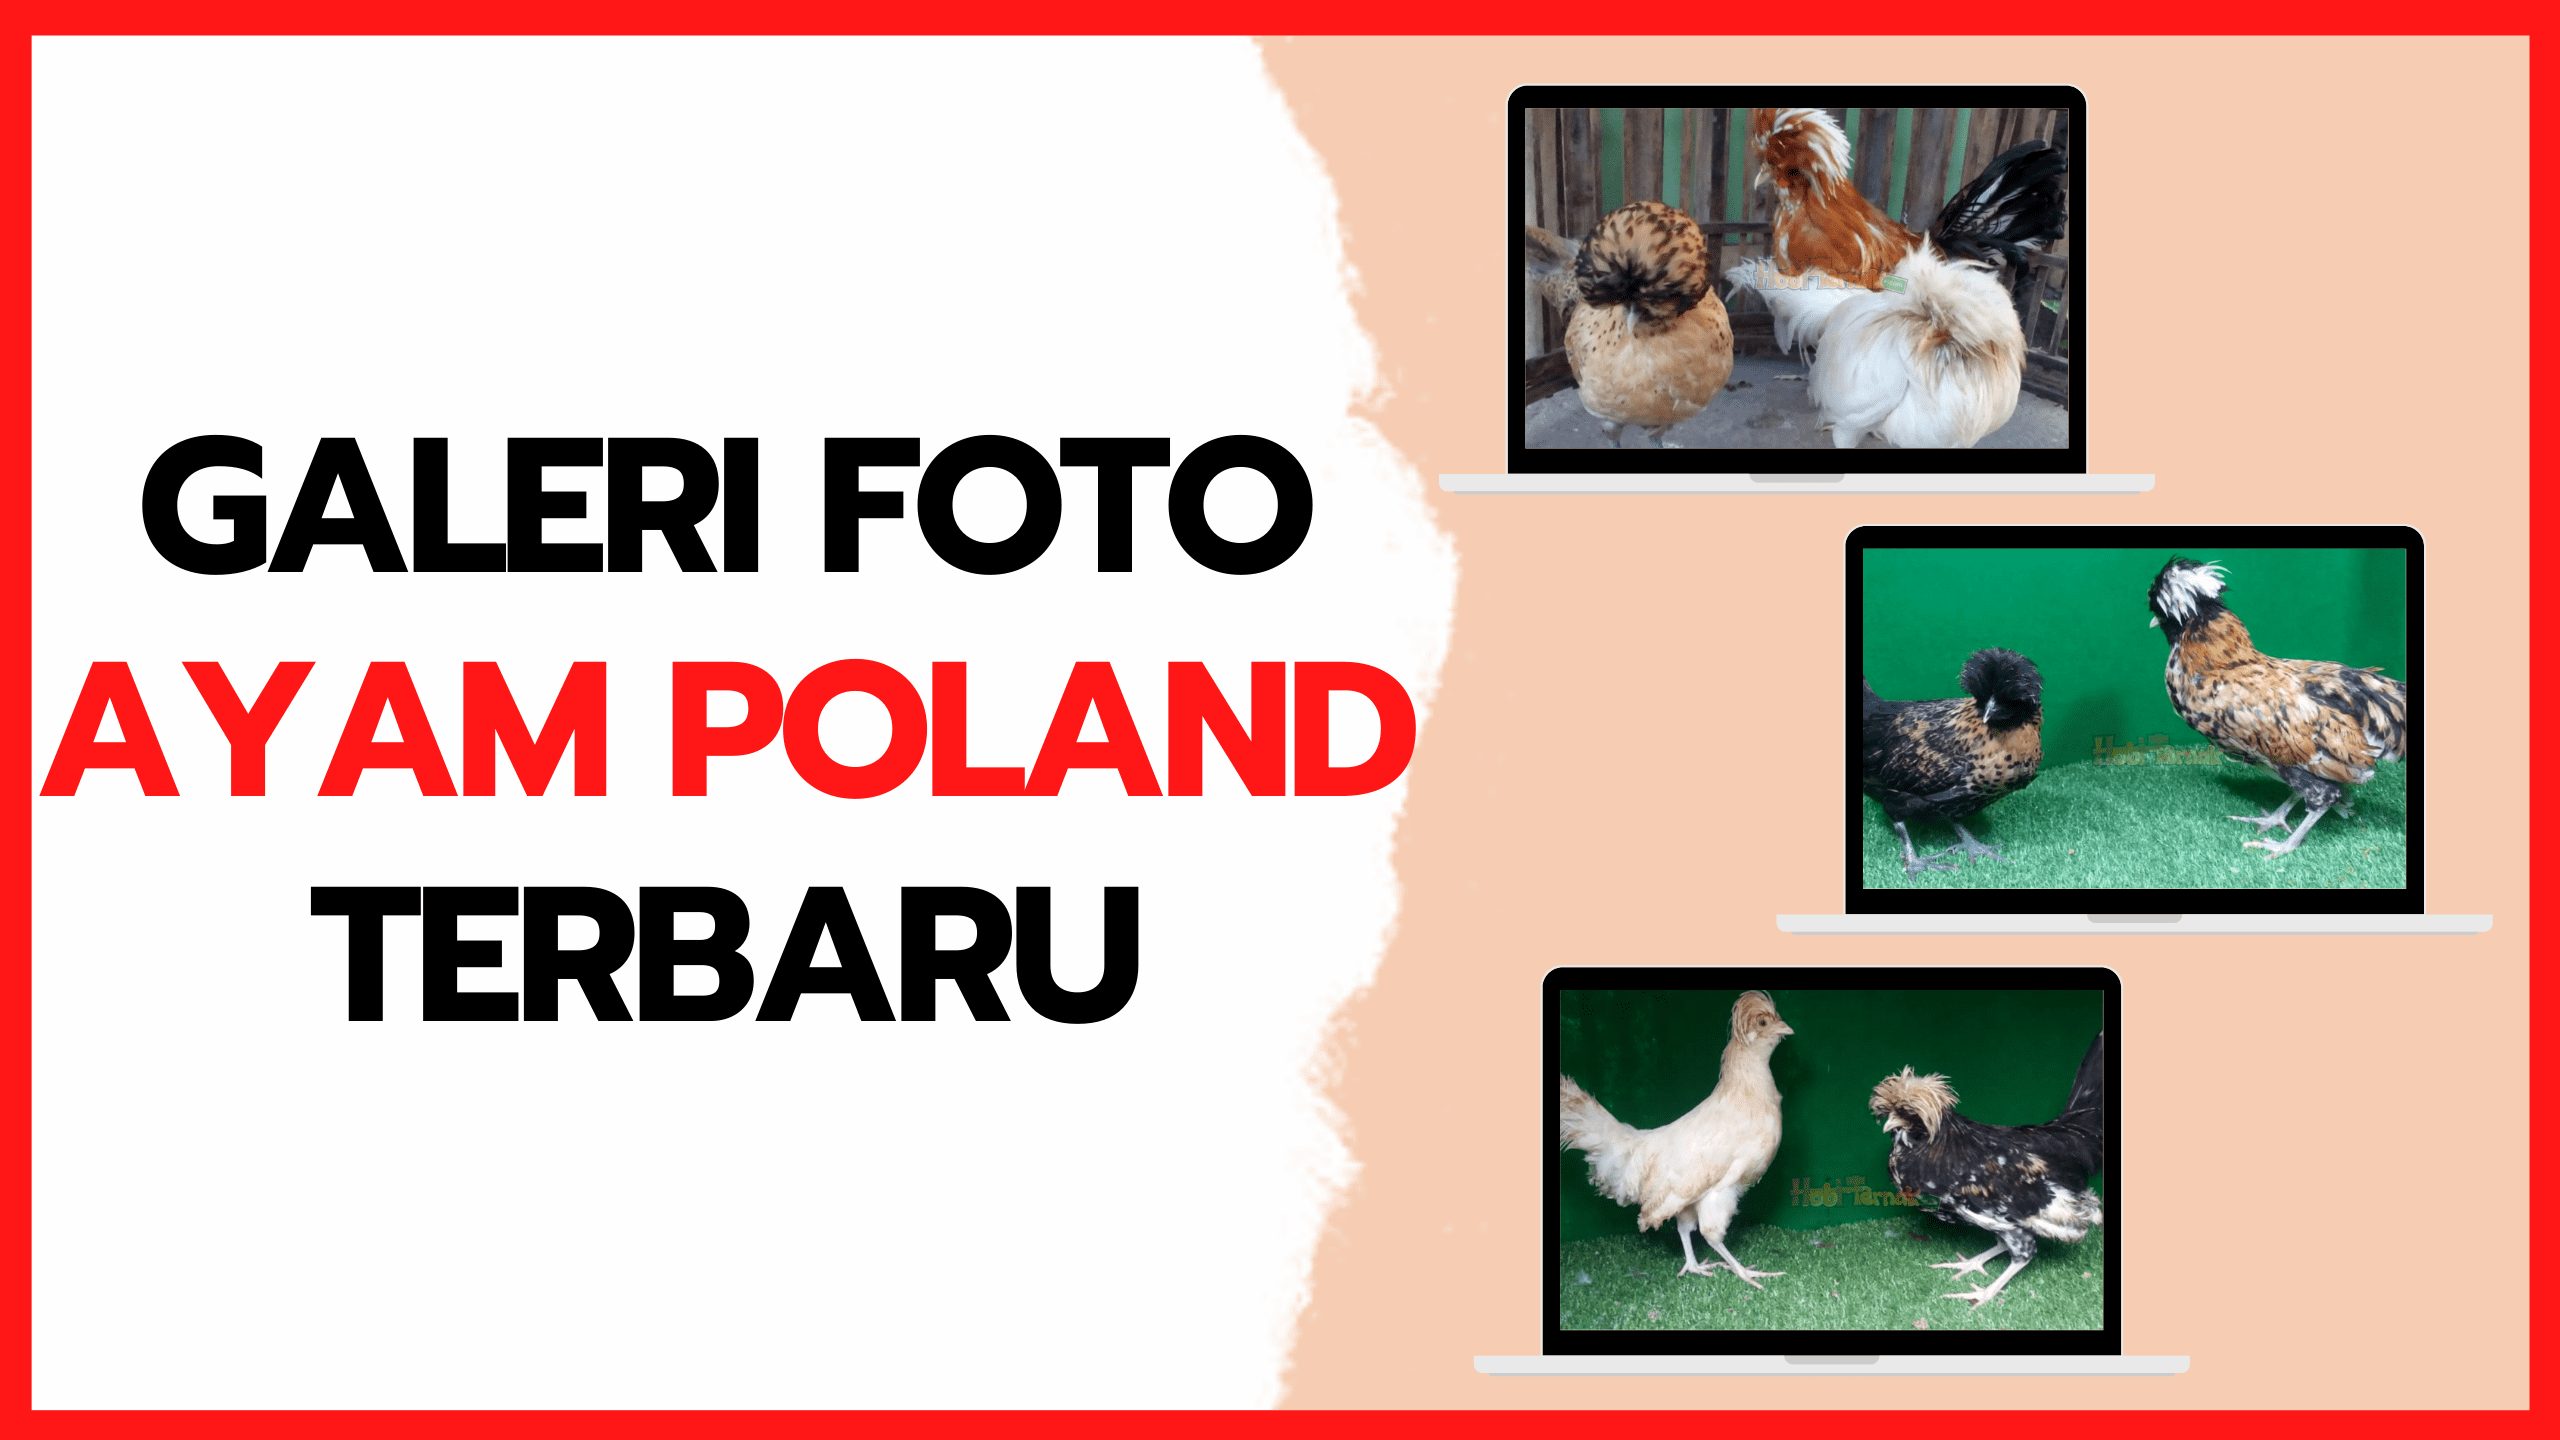 Galeri Foto Ayam Poland Terbaru